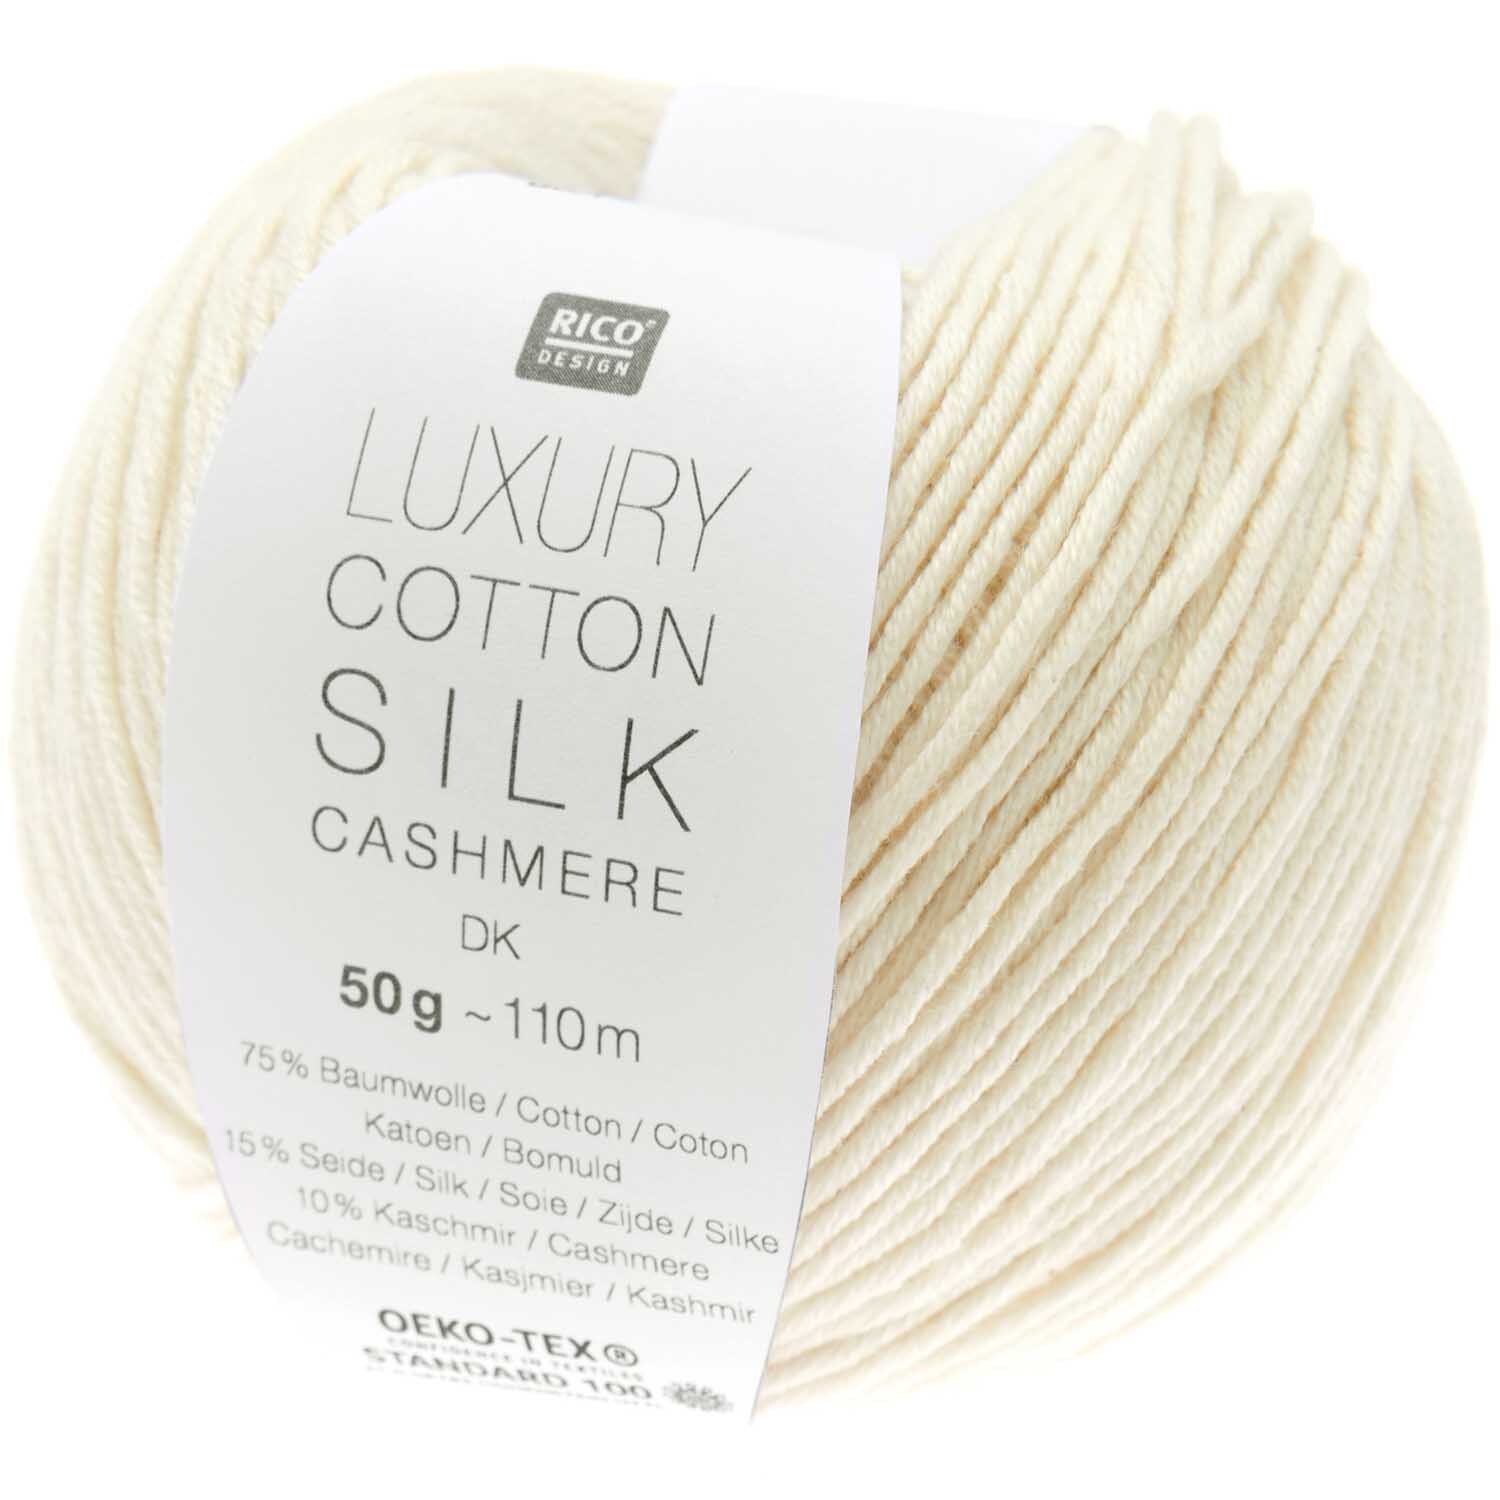 Luxury Cotton Silk Cashmere dk